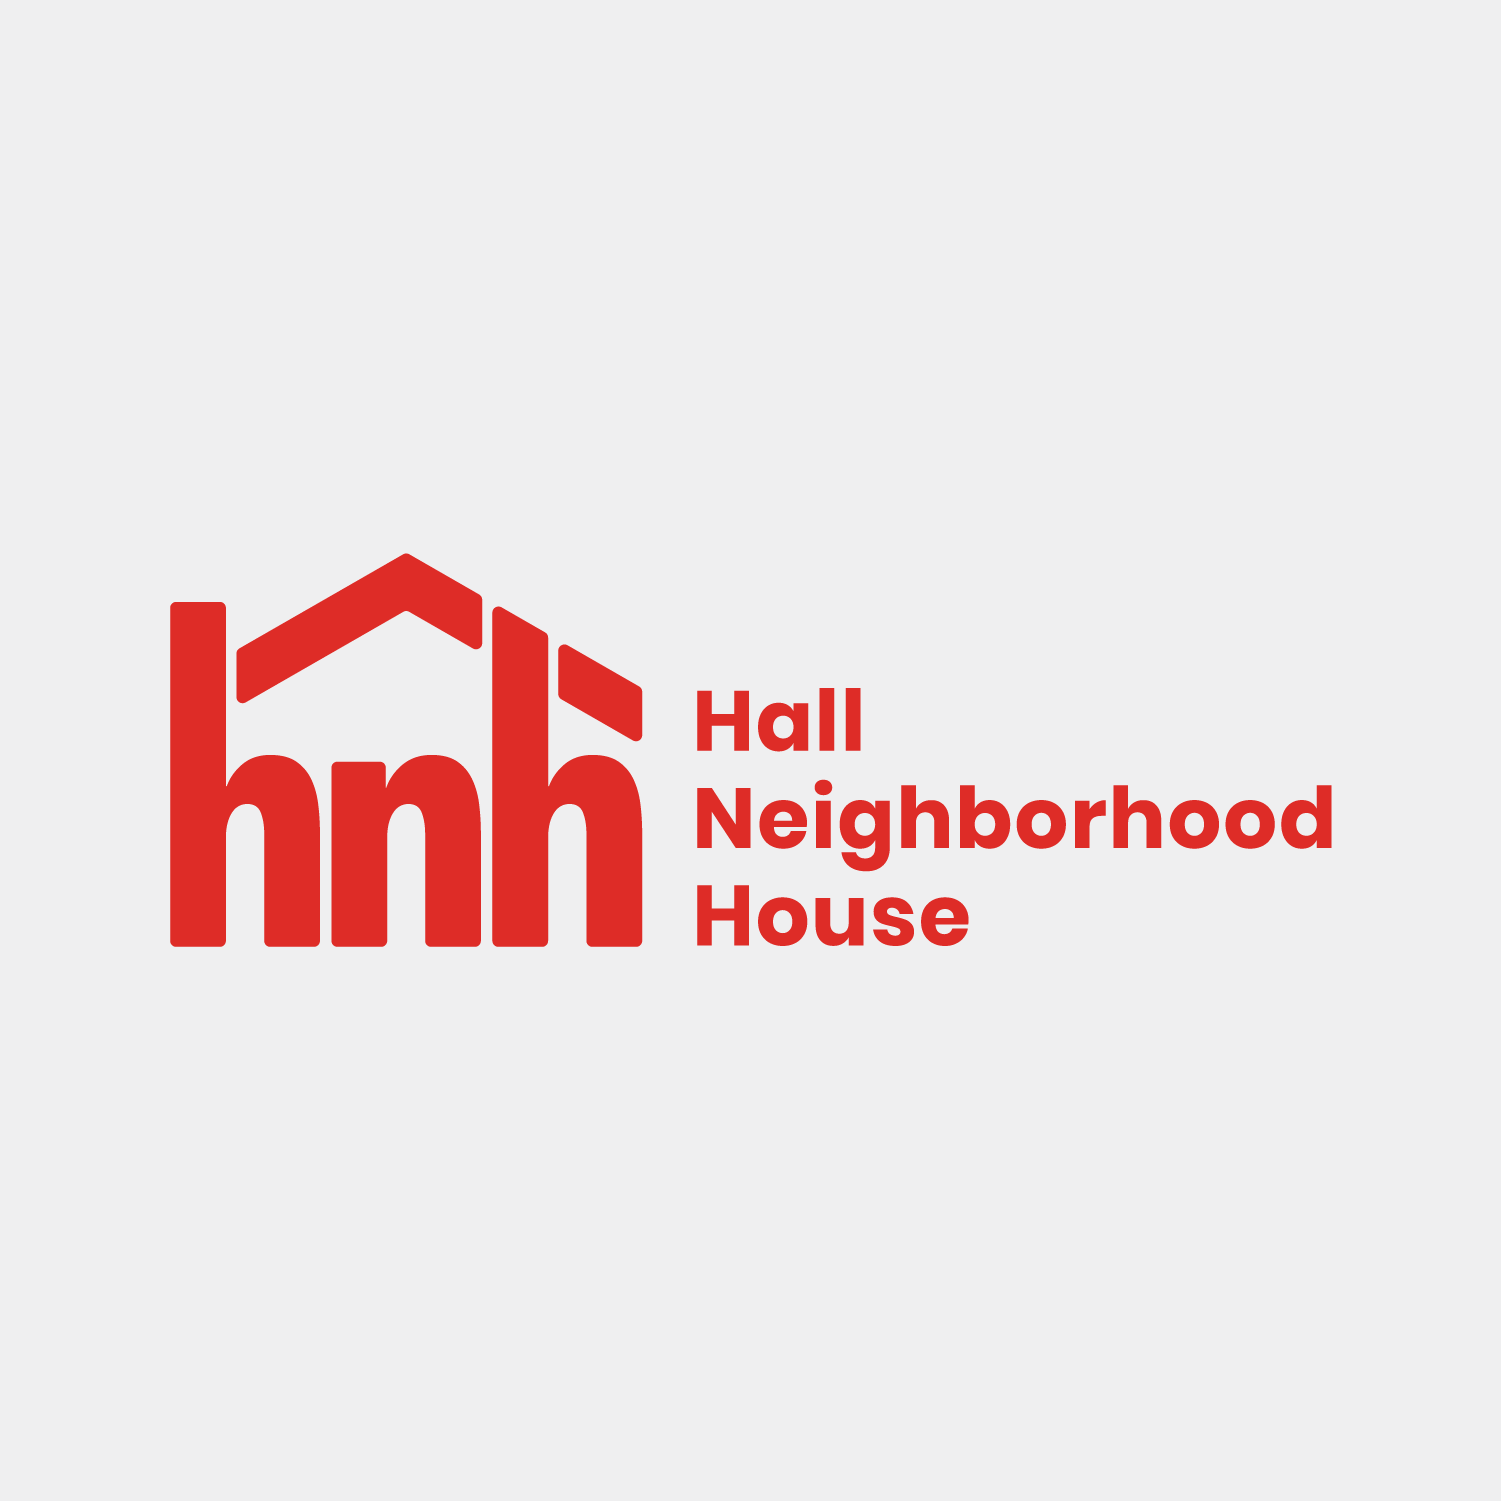 Hall Neighborhood House